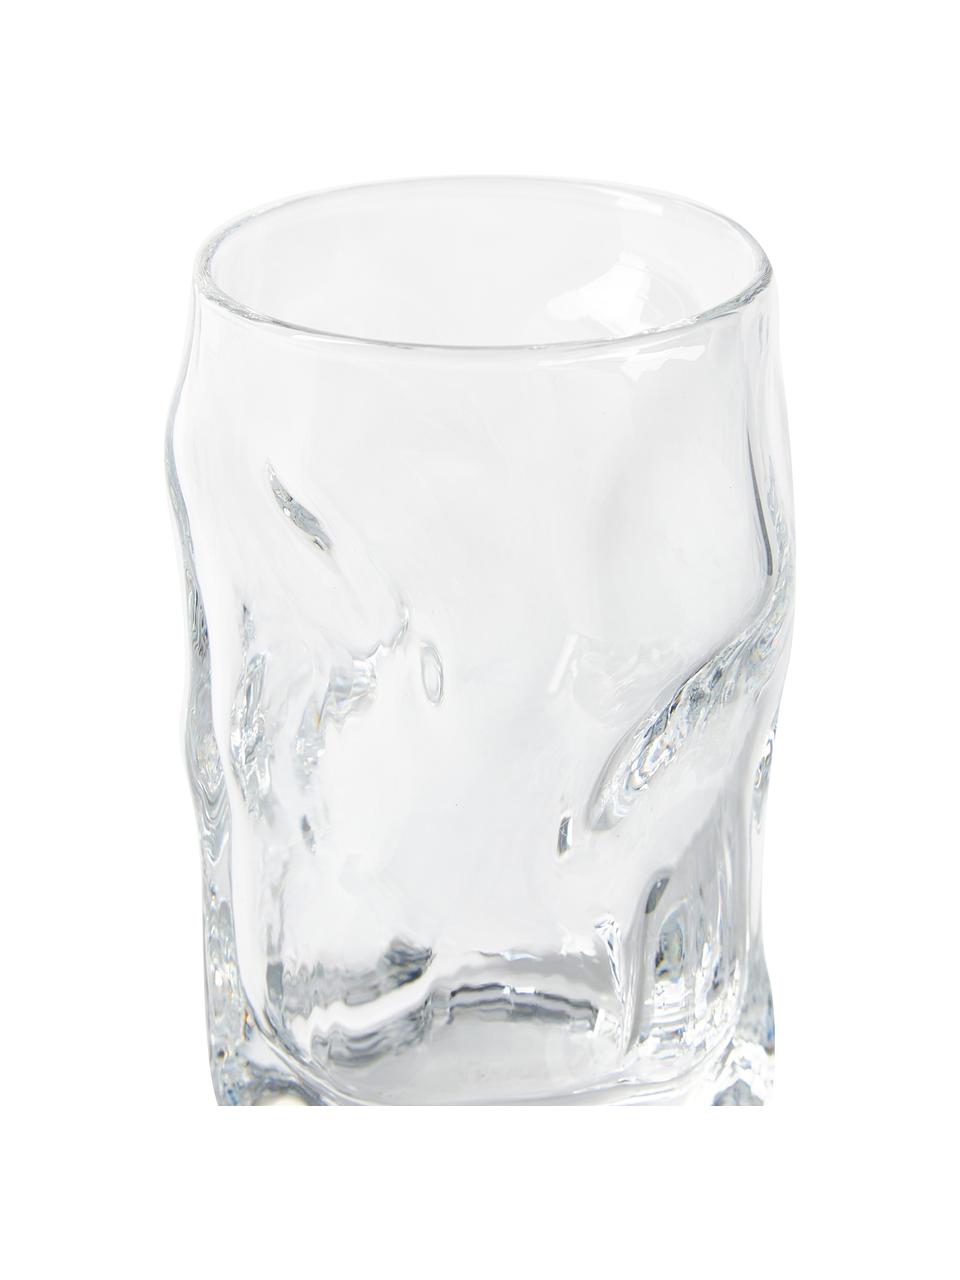 Schnapsgläser Sorgente in organischer Form, 6 Stück, Glas, Transparent, Ø 5 x H 8 cm, 70 ml